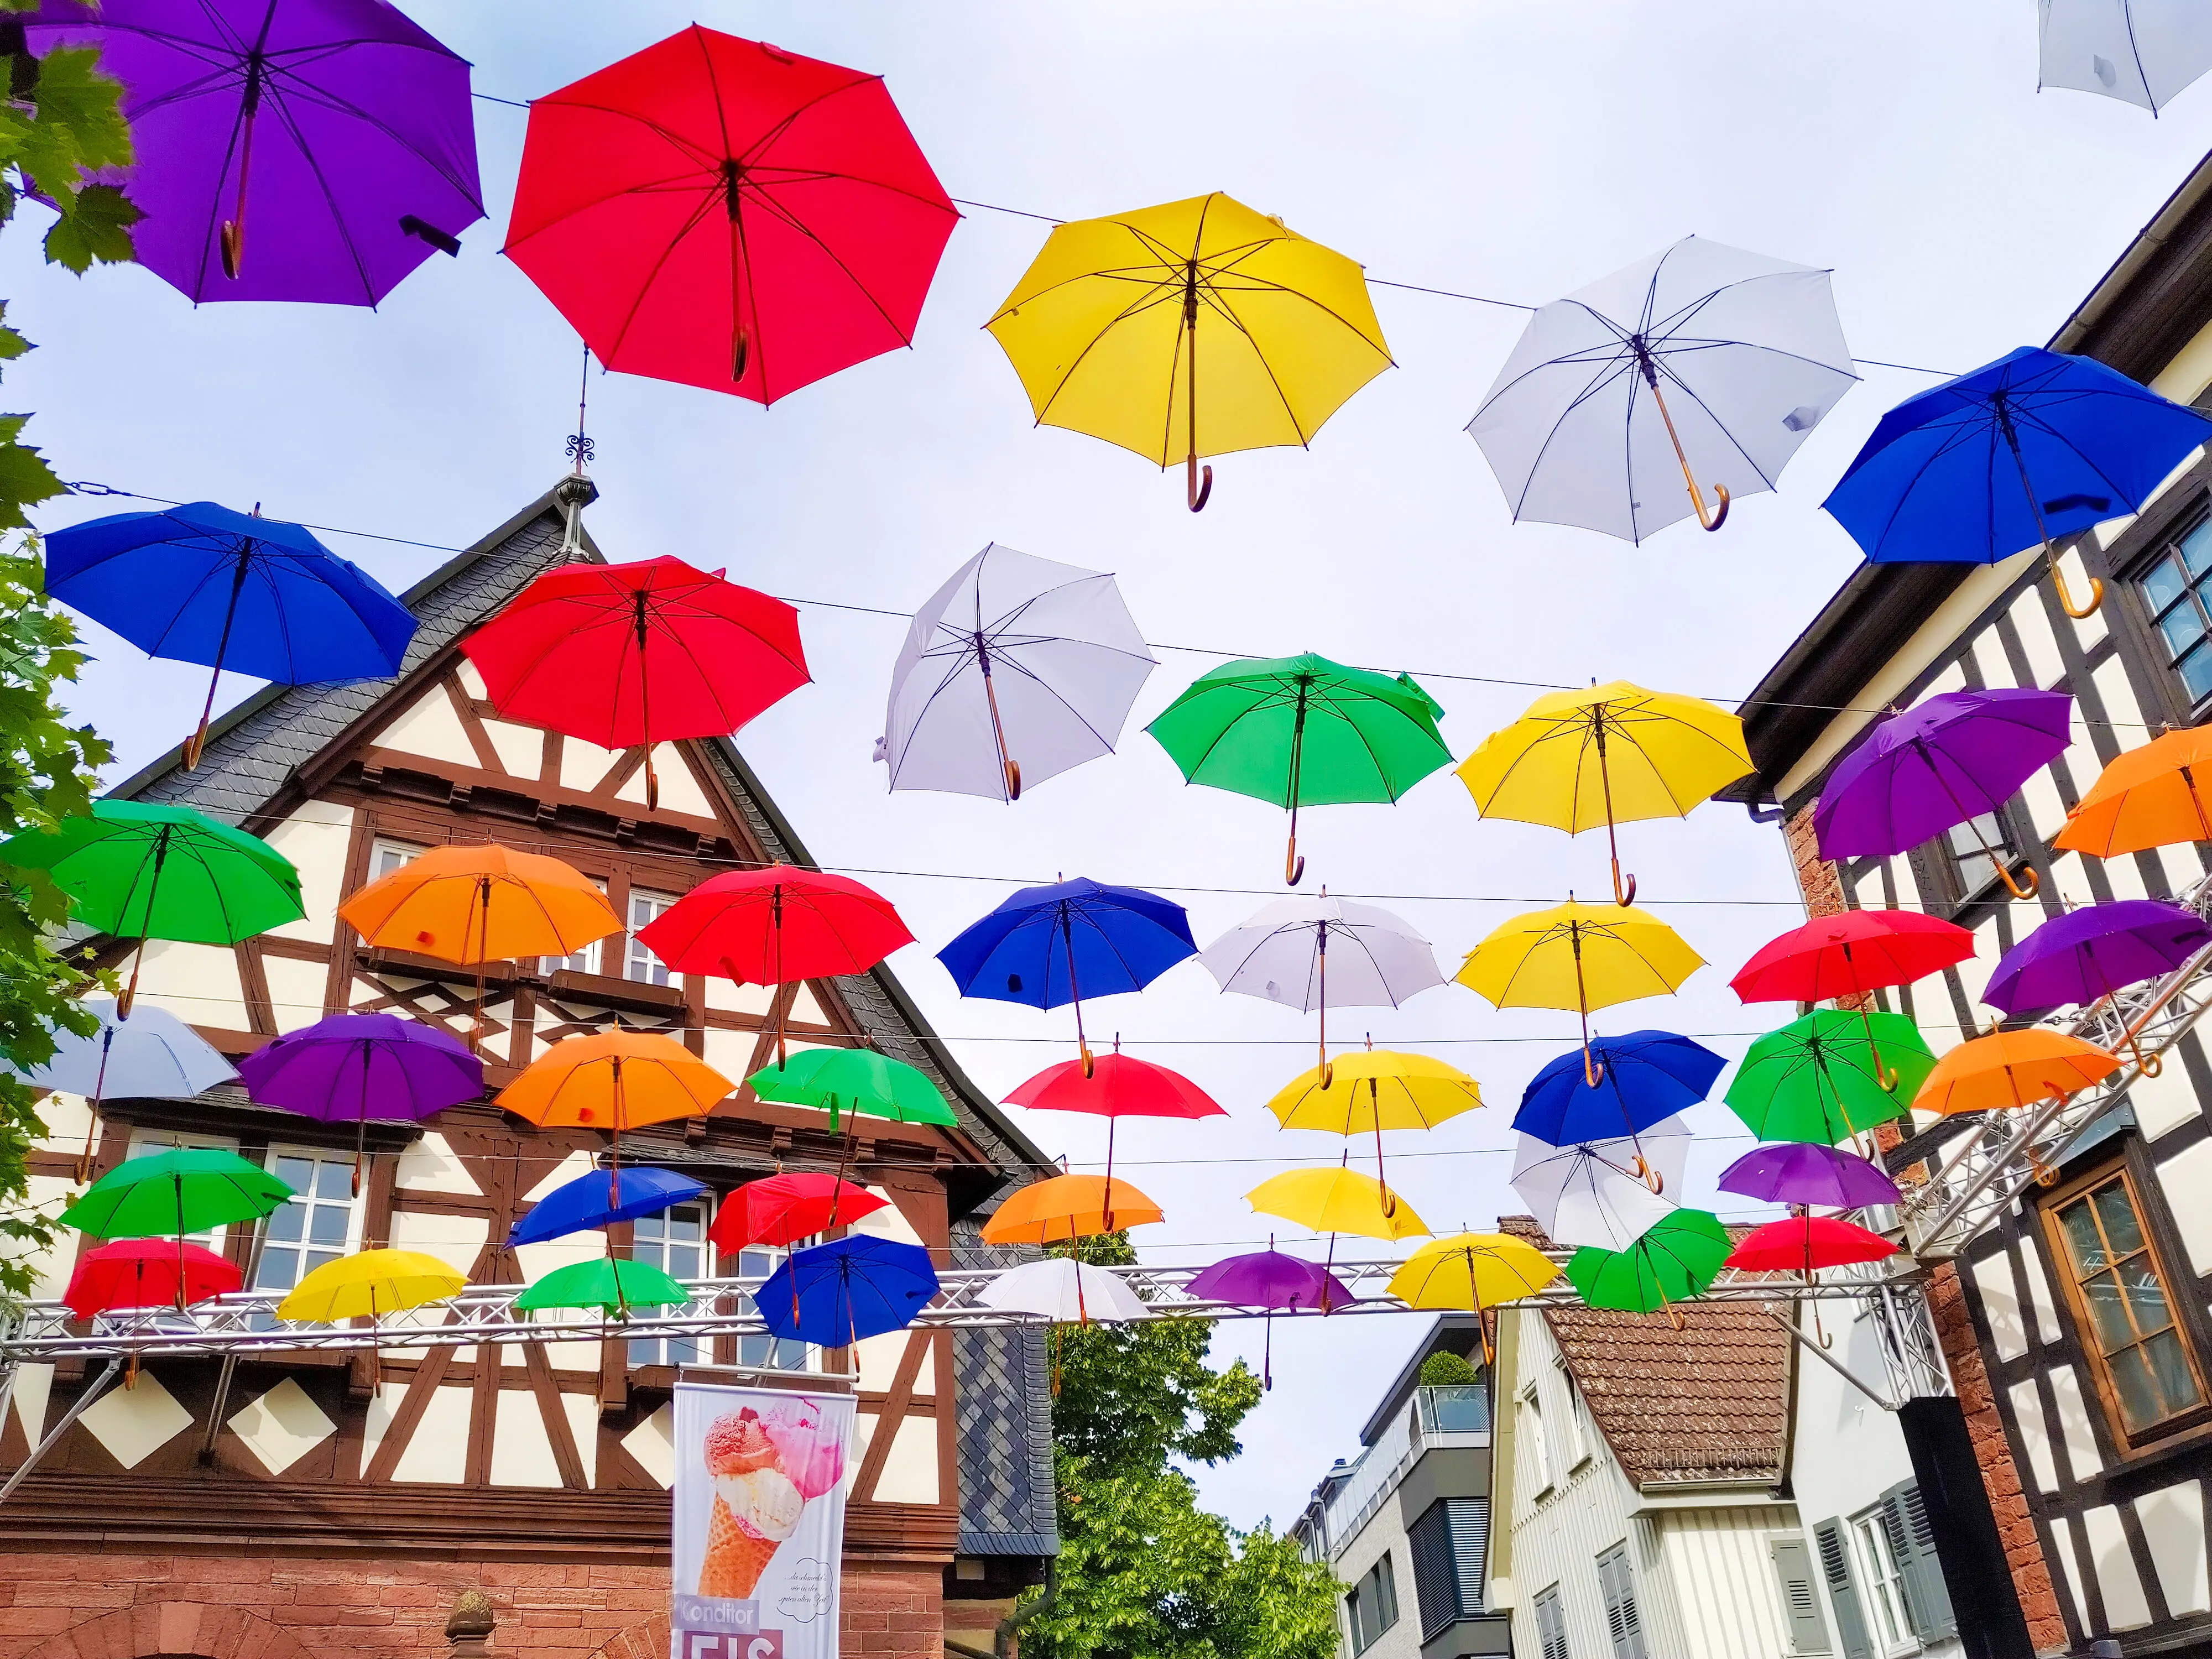 Fachwerkhäuser in Hofheim mit bunten Regenschirmen, die an Seilen zwischen den Häusern gespannt sind